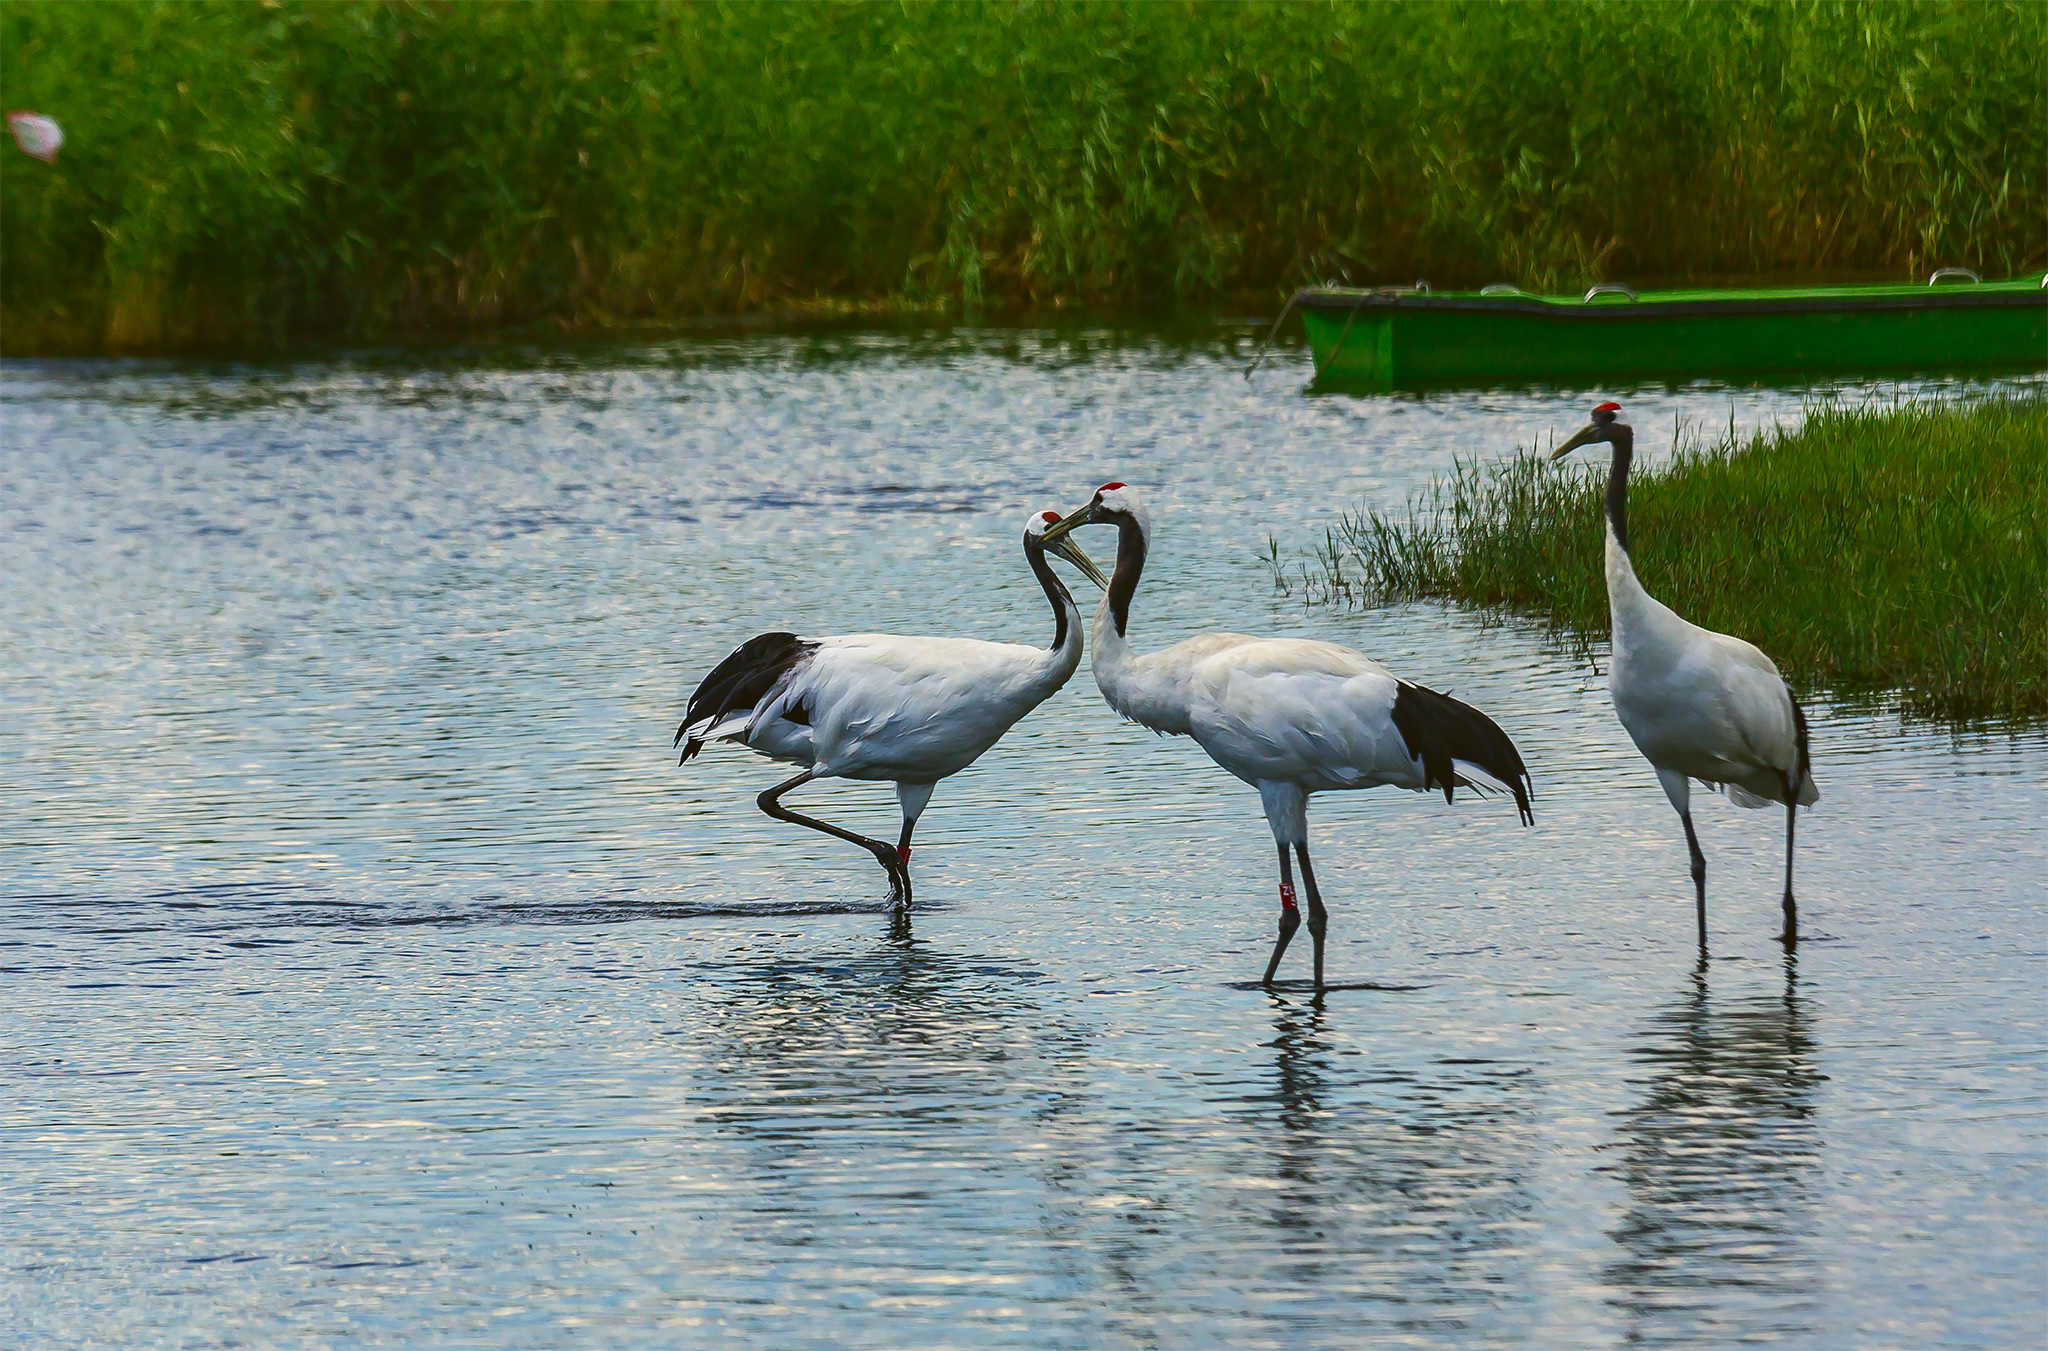 扎龙湿地,有丹顶鹤陪伴的夏天